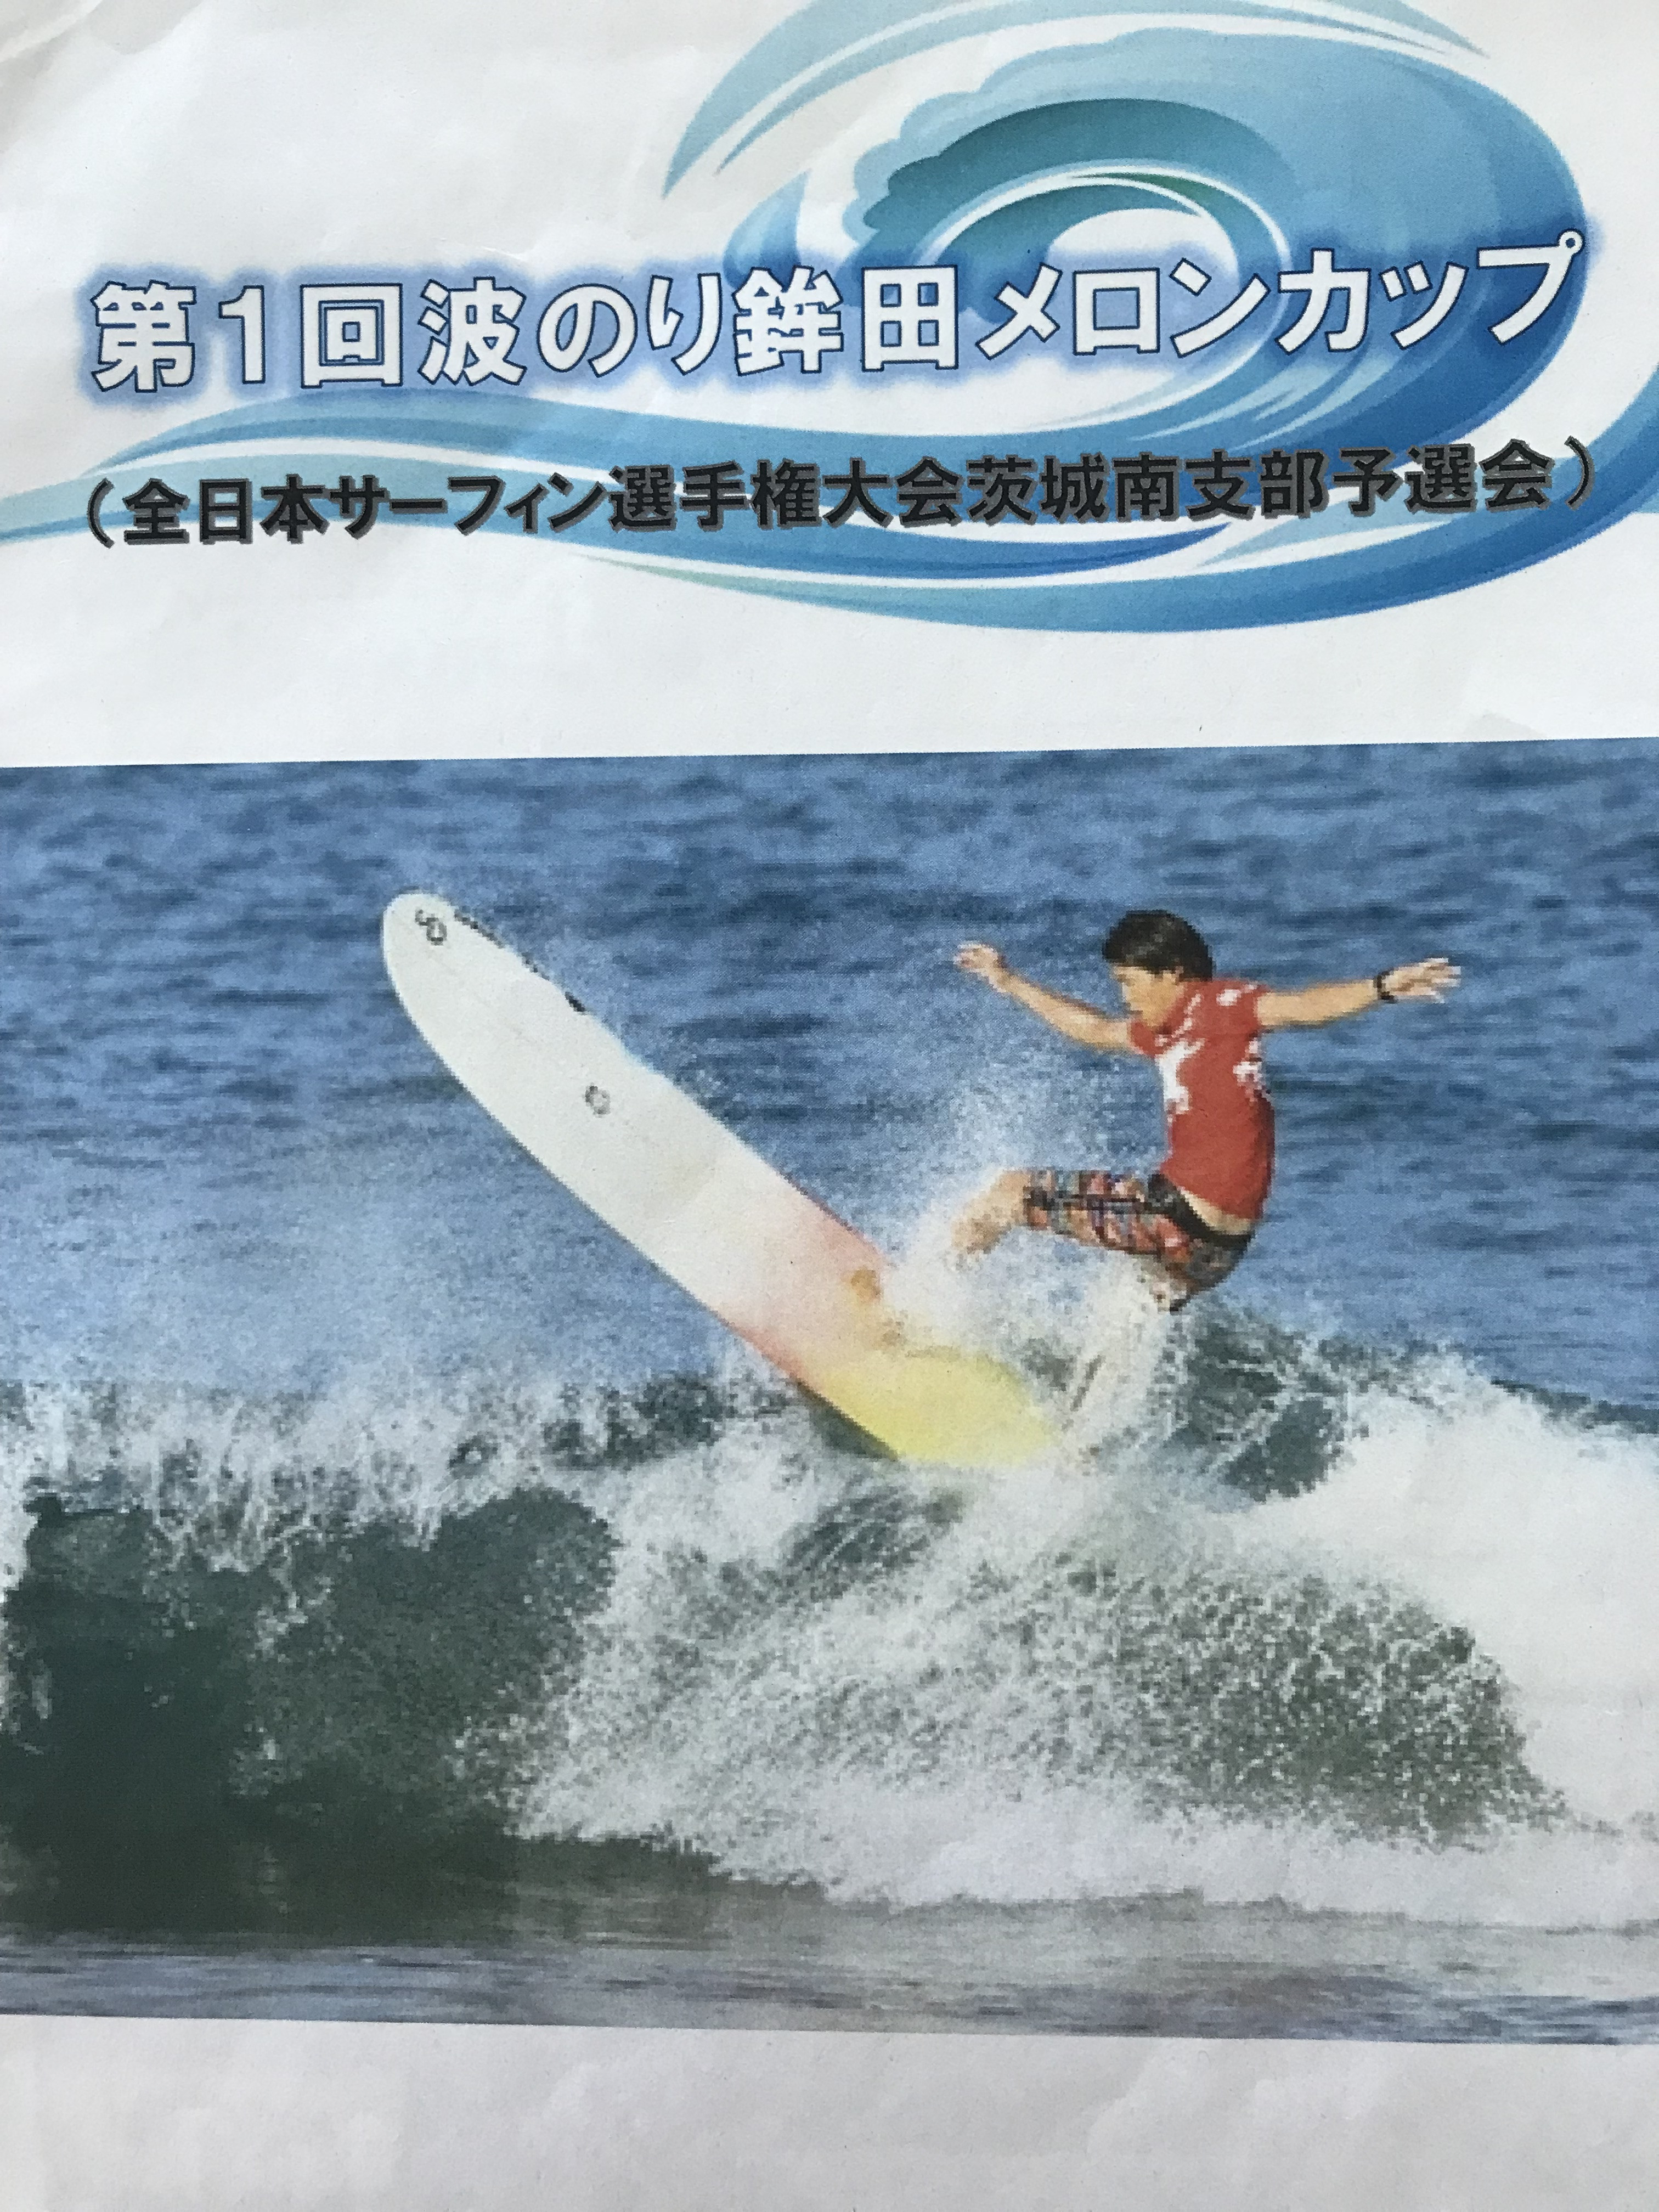 サーフィン 大会 全日本 選手権